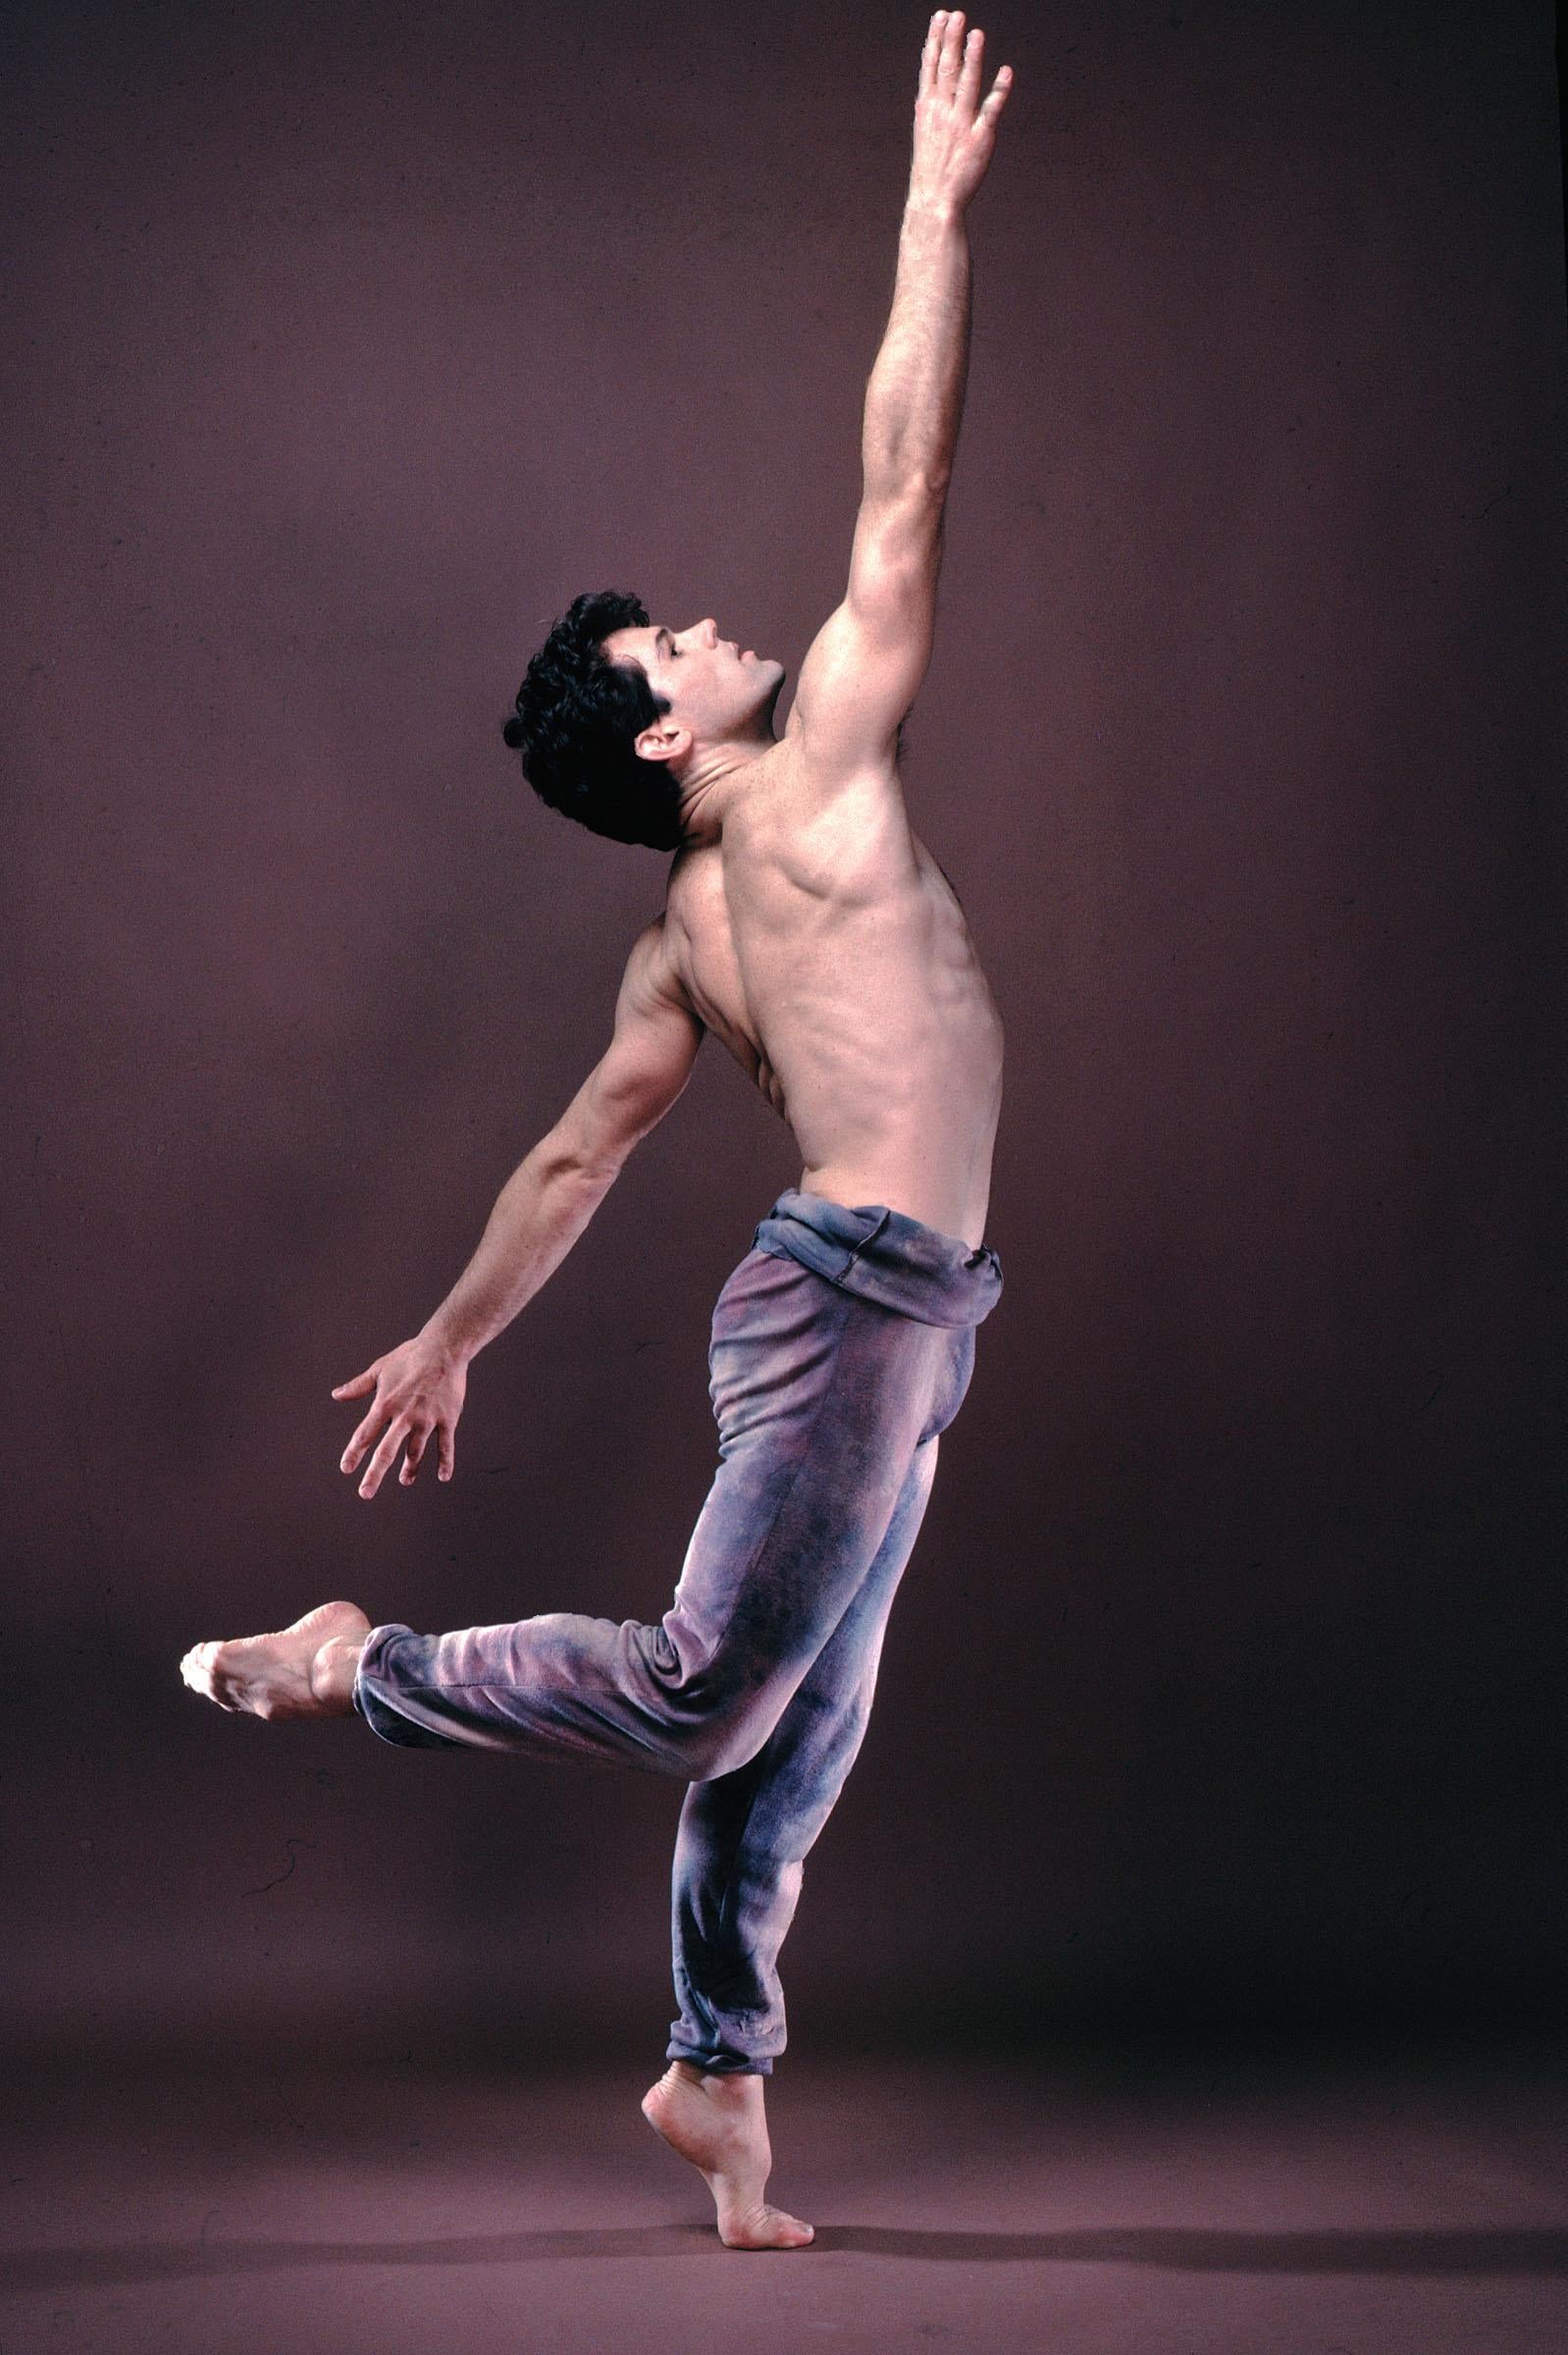 Dancer/Choreographer Christopher Gillis, Color 17 x 22" Exhibition Photograph 